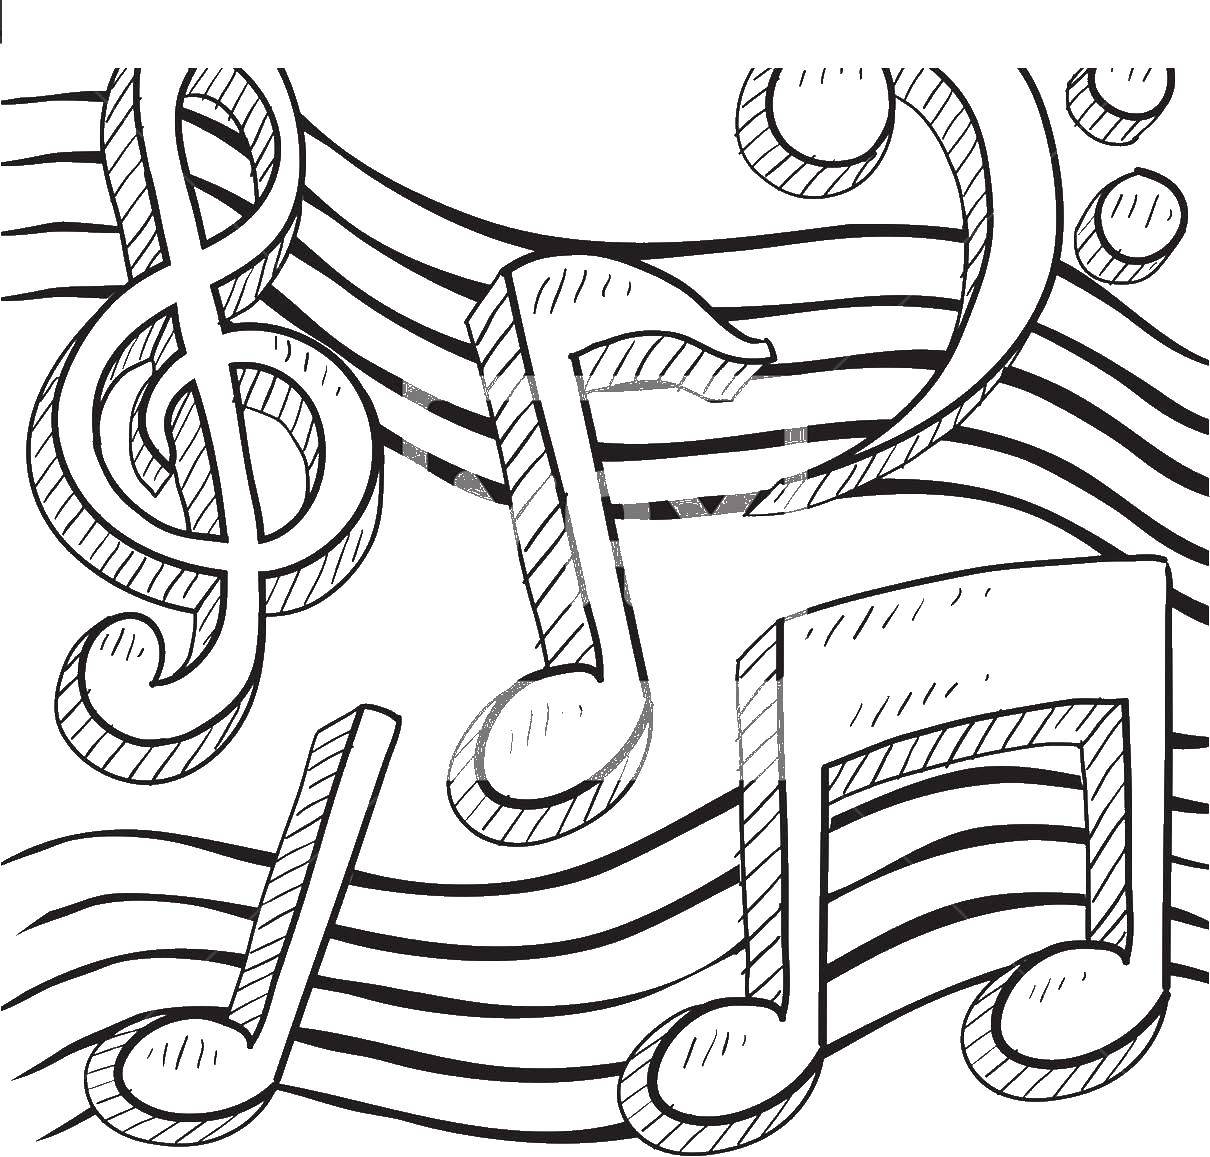 Название: Раскраска Нотные строки. Категория: Музыка. Теги: Музыка, инструмент, музыкант, ноты.